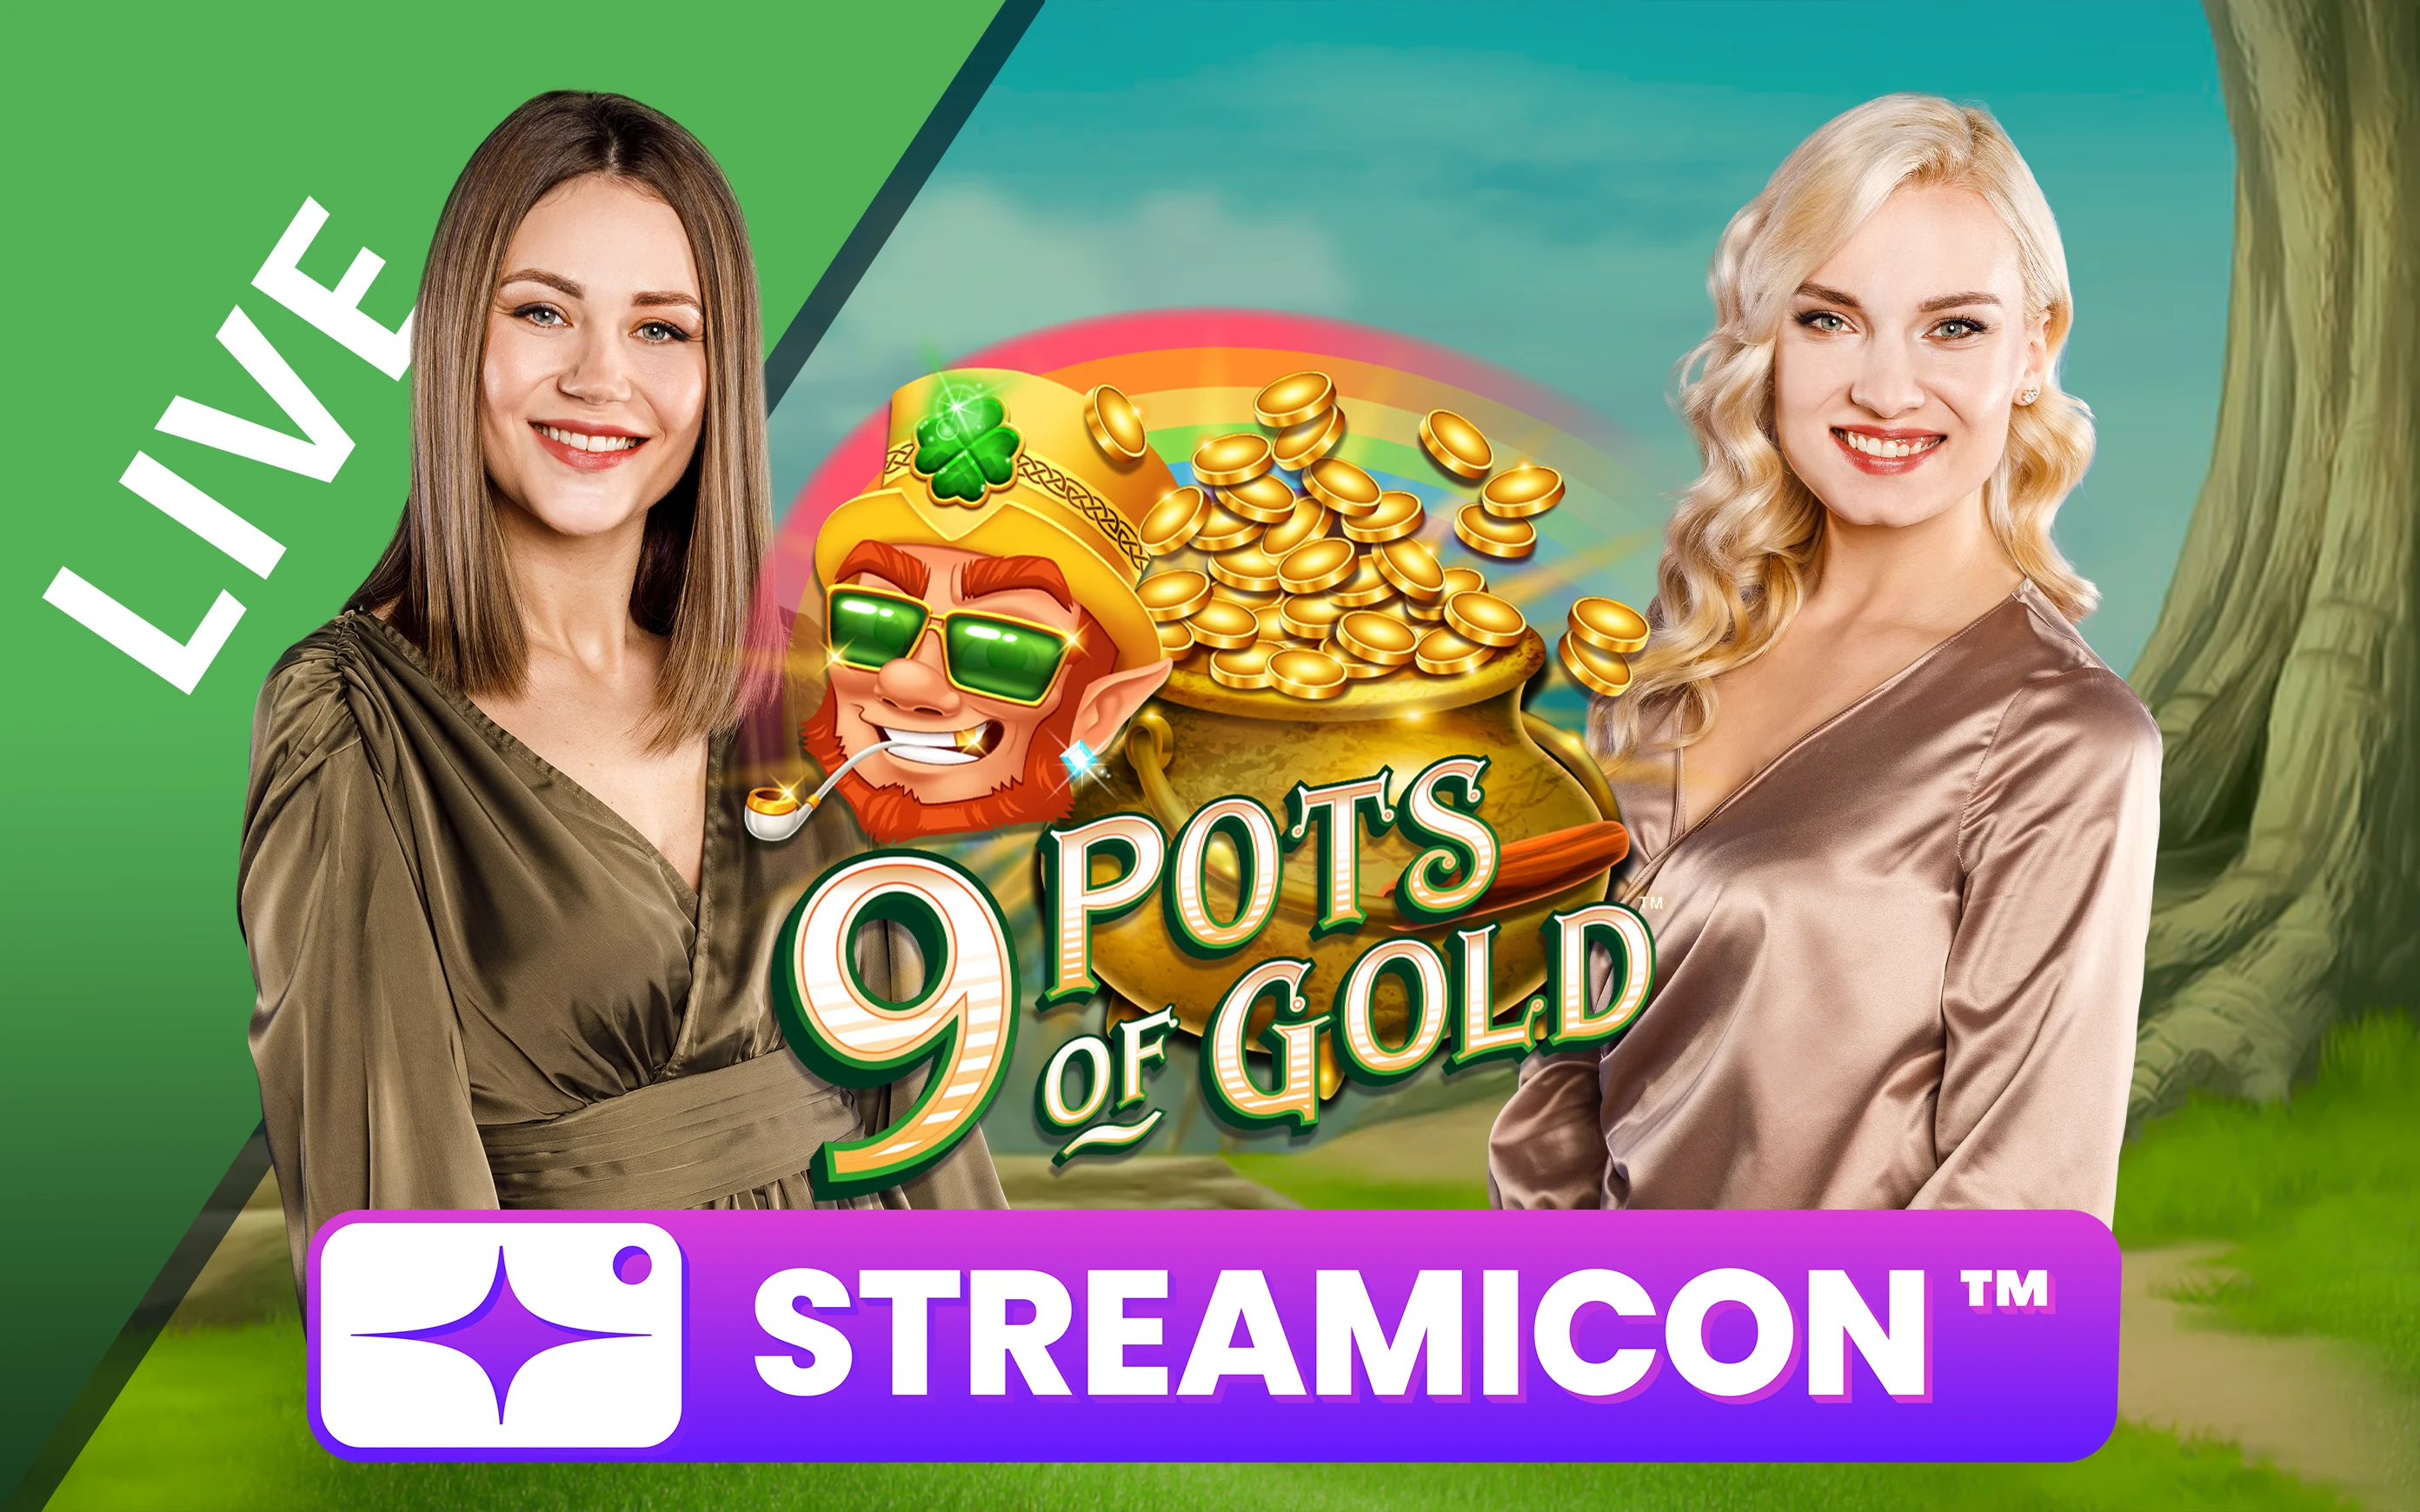 Luaj 9 Pots of Gold™ Streamicon™ në kazino Starcasino.be në internet